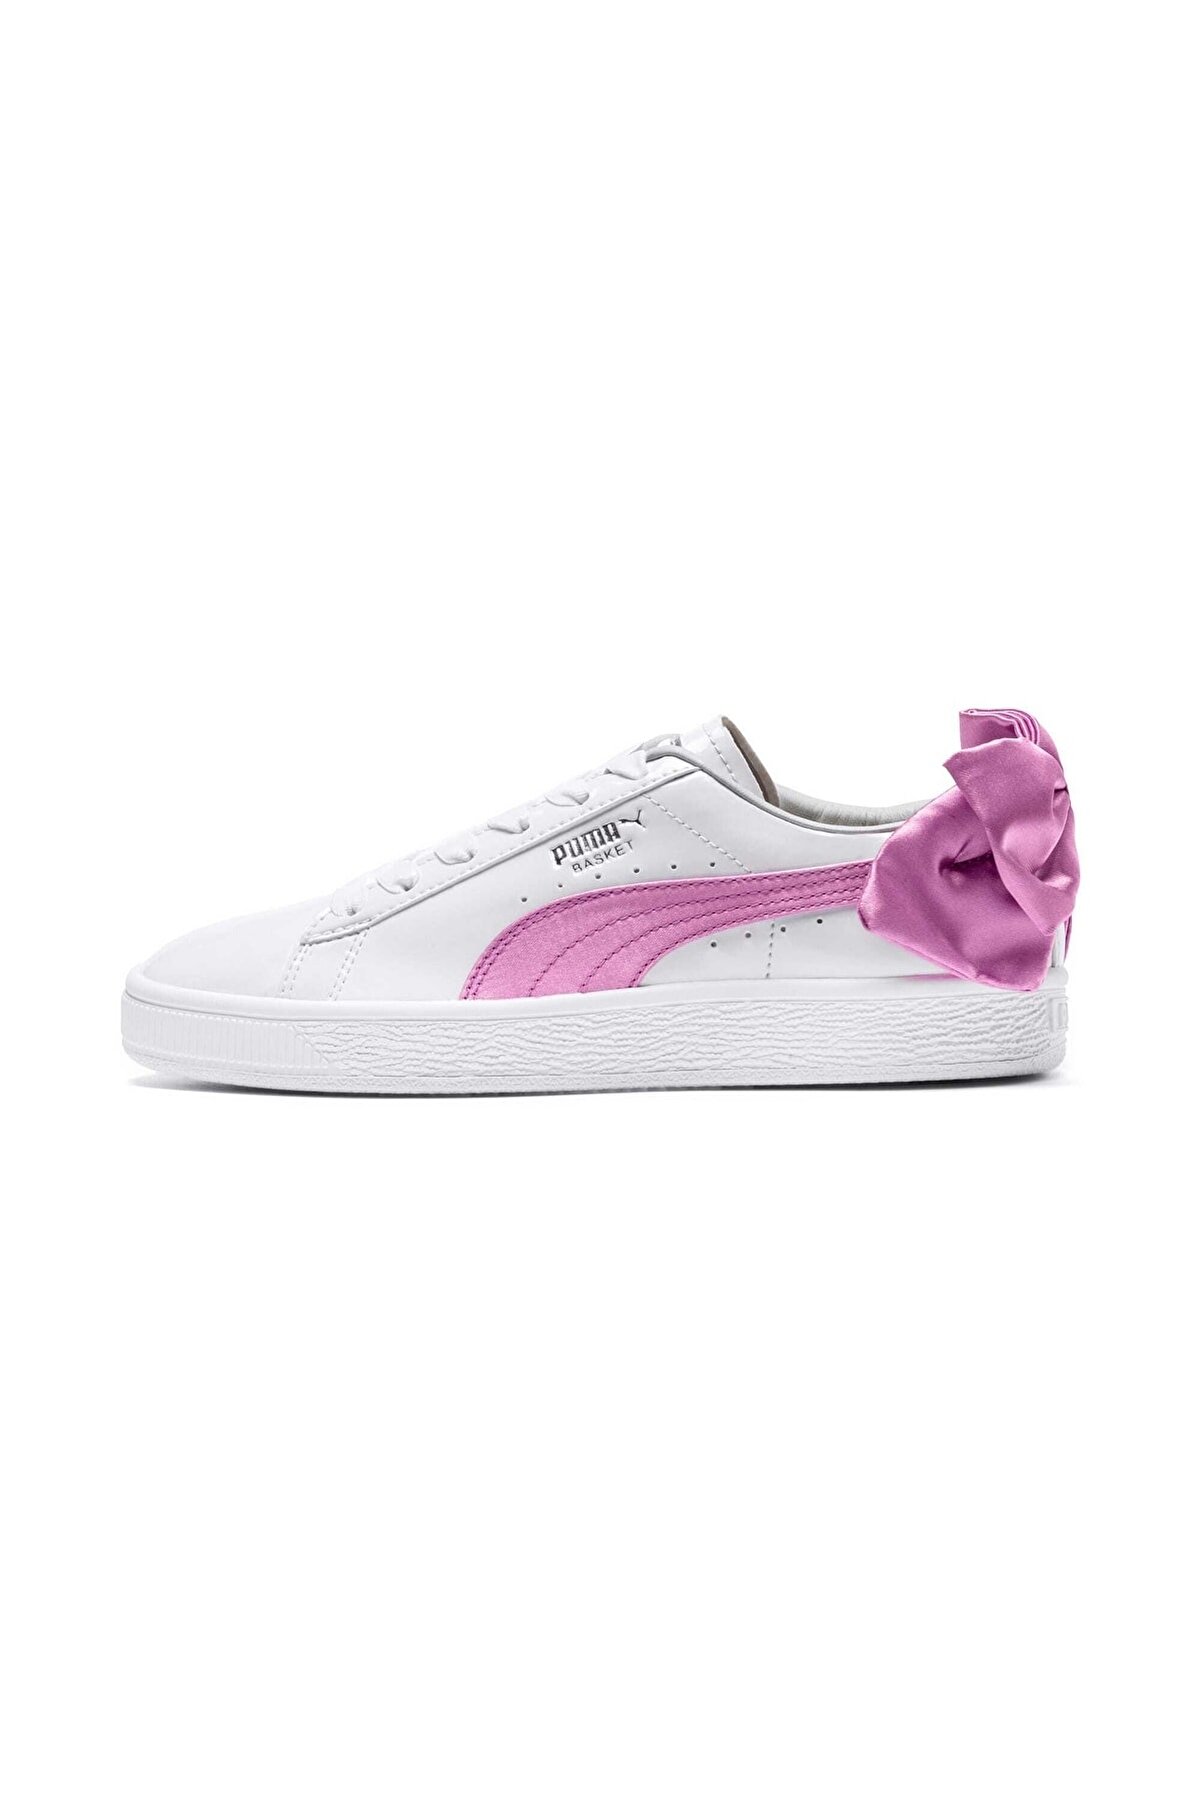 Puma BASKET BOW PATENT JR Beyaz Kız Çocuk Sneaker Ayakkabı 100351831